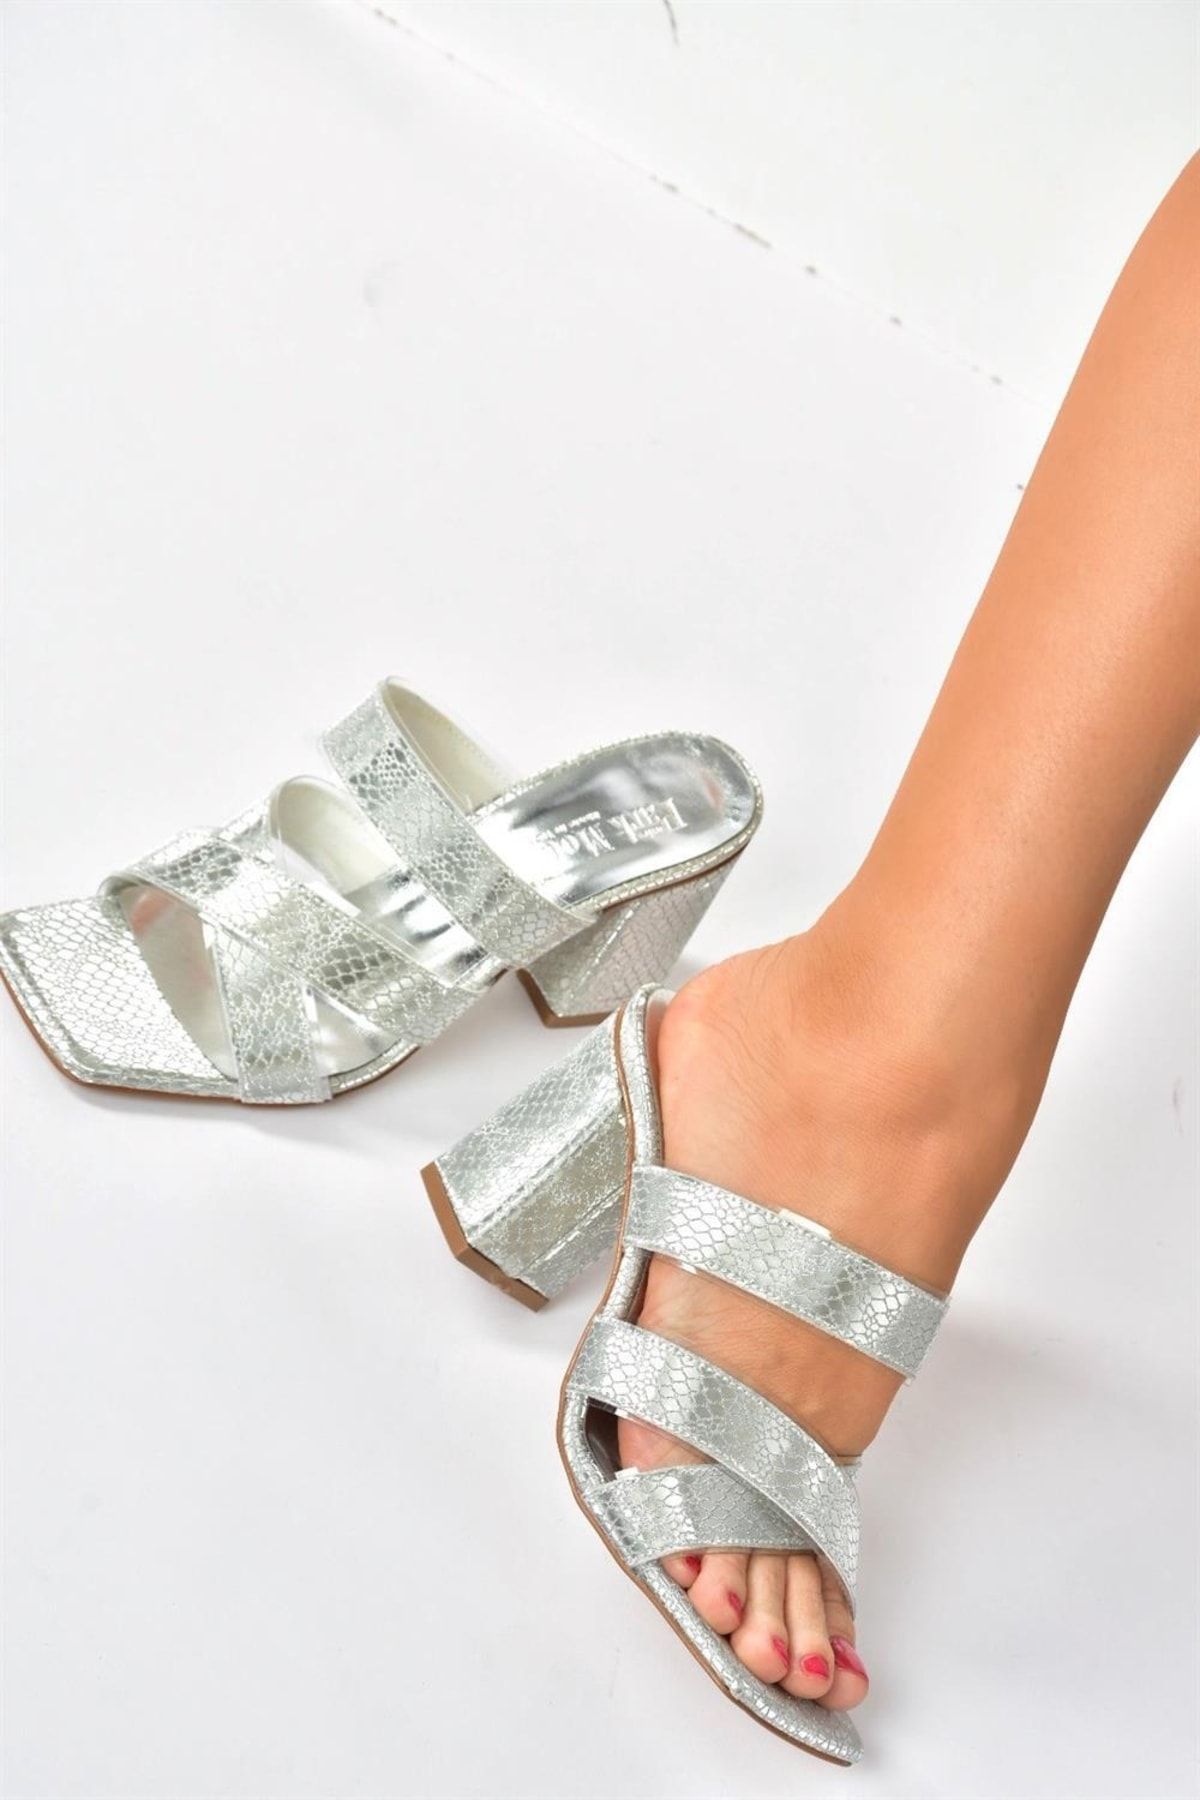 Fox Shoes Gümüş Yılan Baskı Topuklu Kadın Terlik P820207007